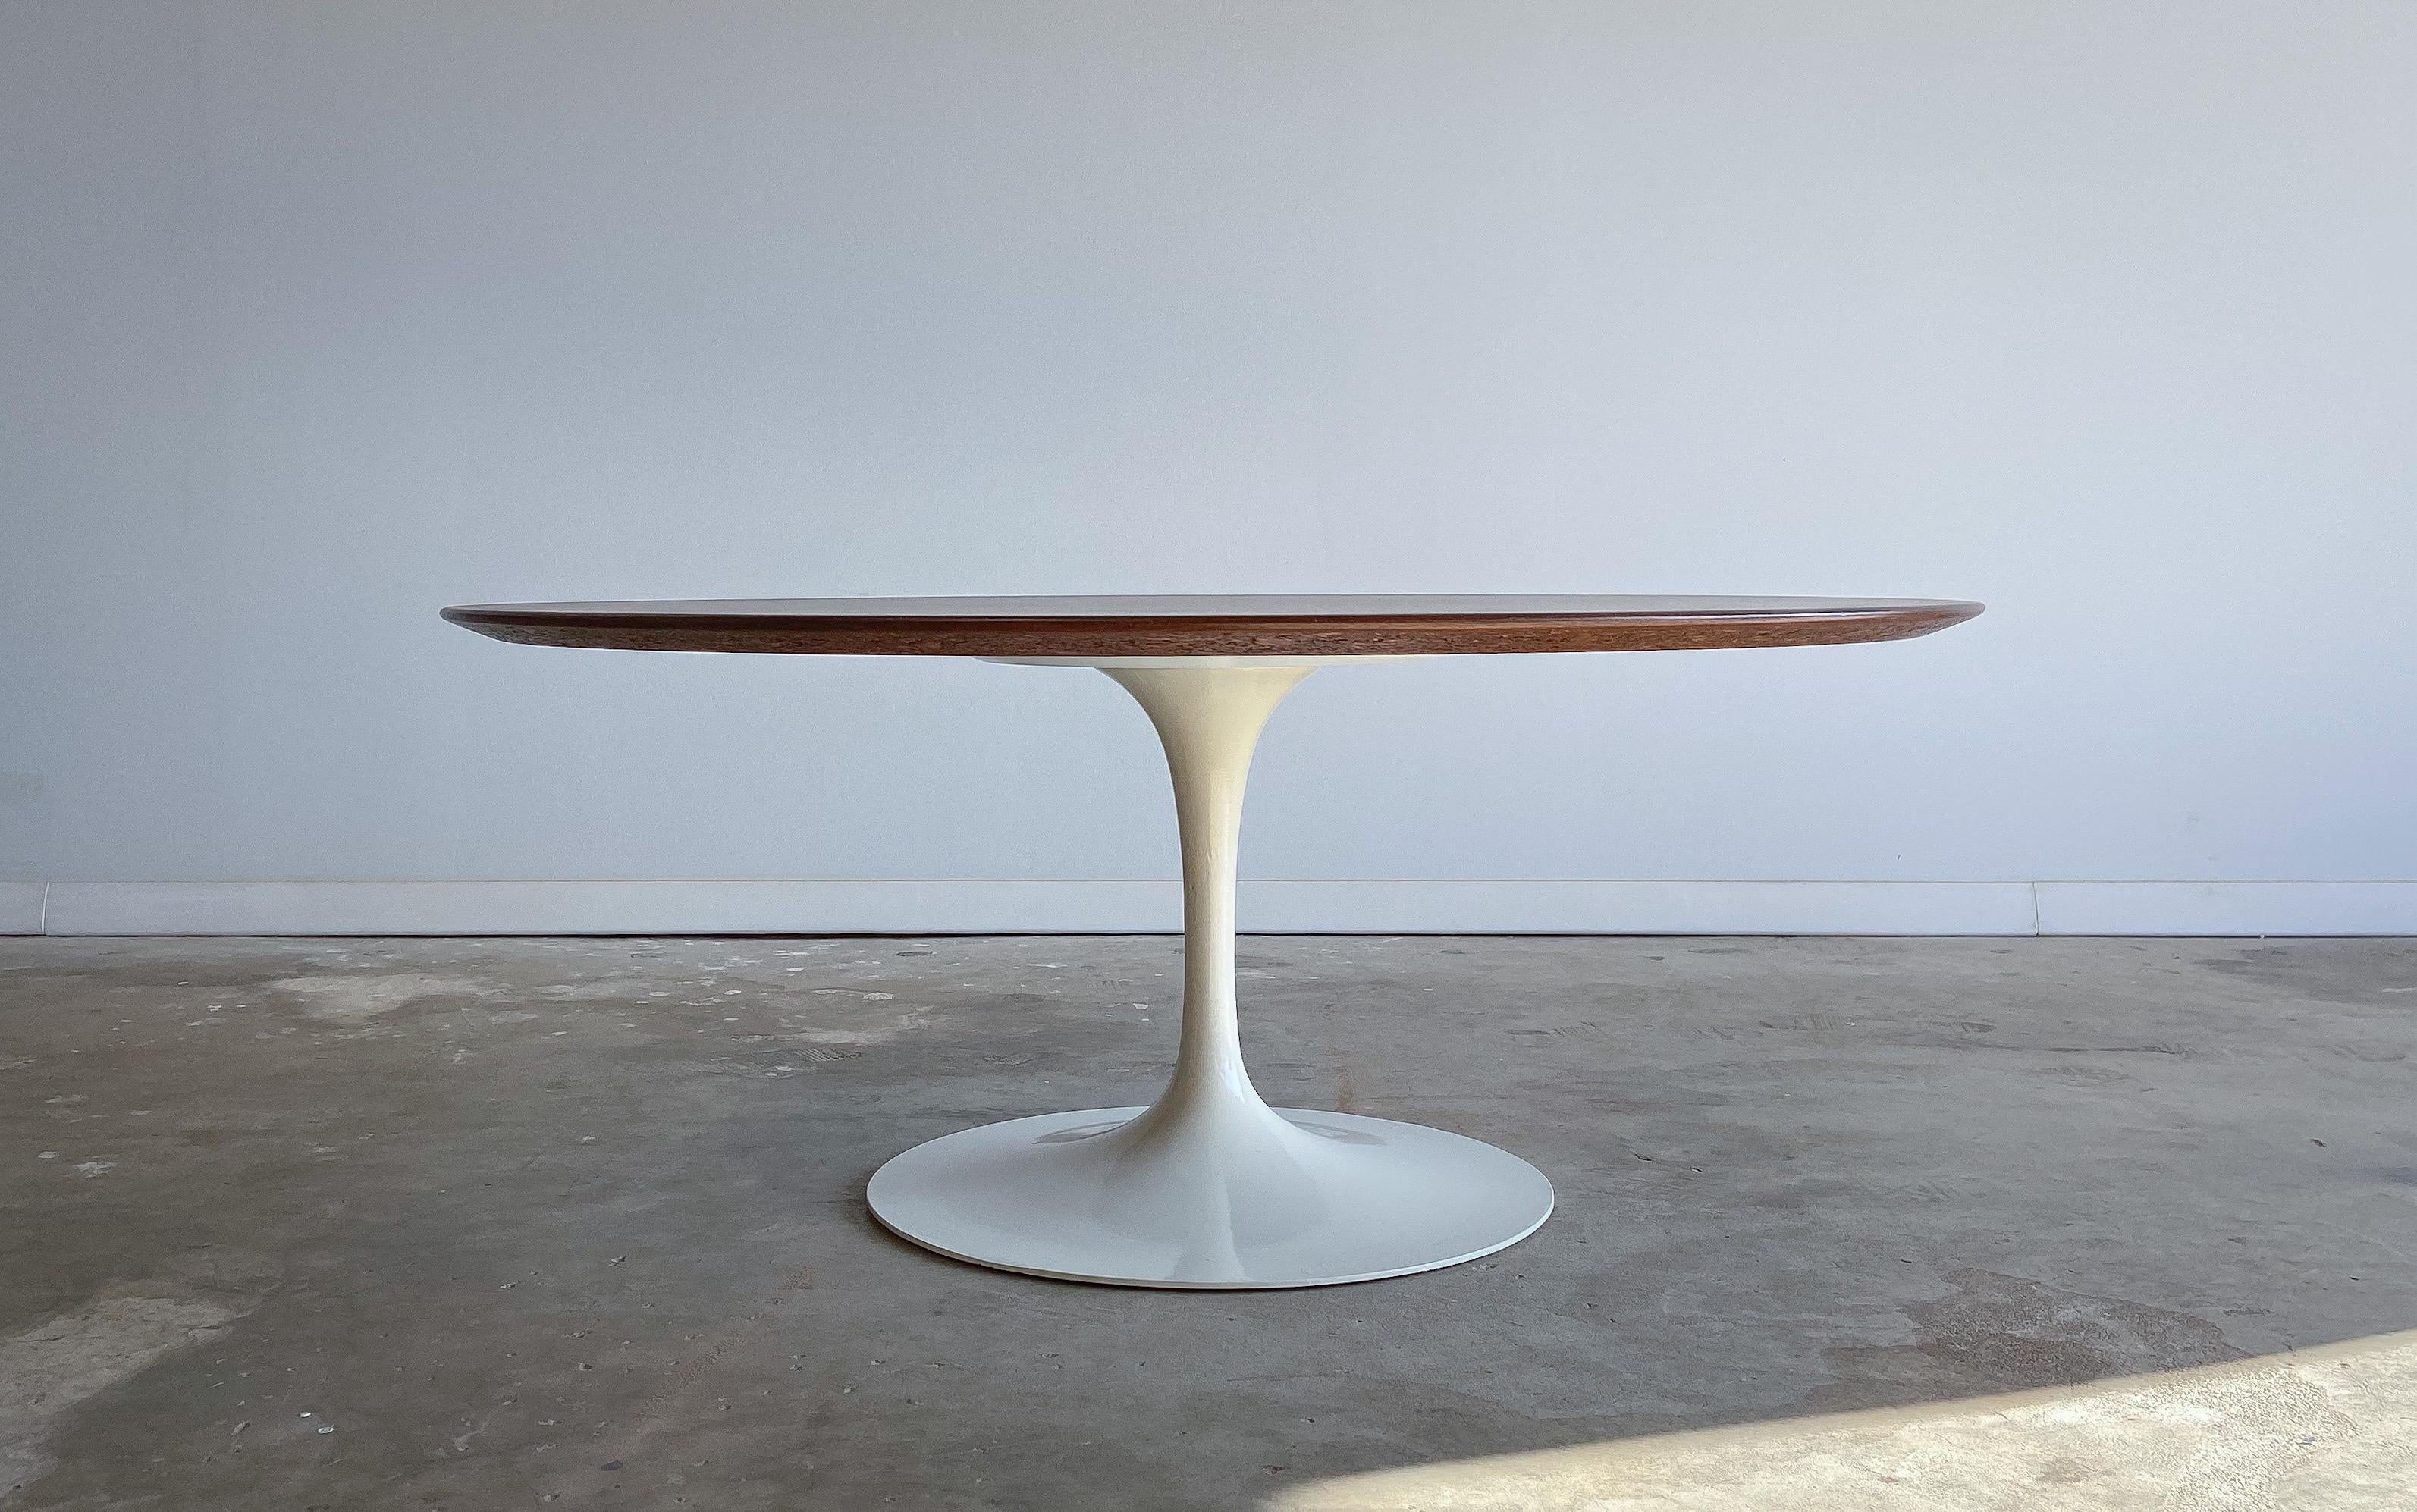 Un design iconique d'un designer iconique.

Table basse conçue par Eero Saarinen pour Knoll International. Cette table a été fabriquée dans les années 1970.

Le plateau est en noyer joliment figuré et la base en aluminium moulé est recouverte